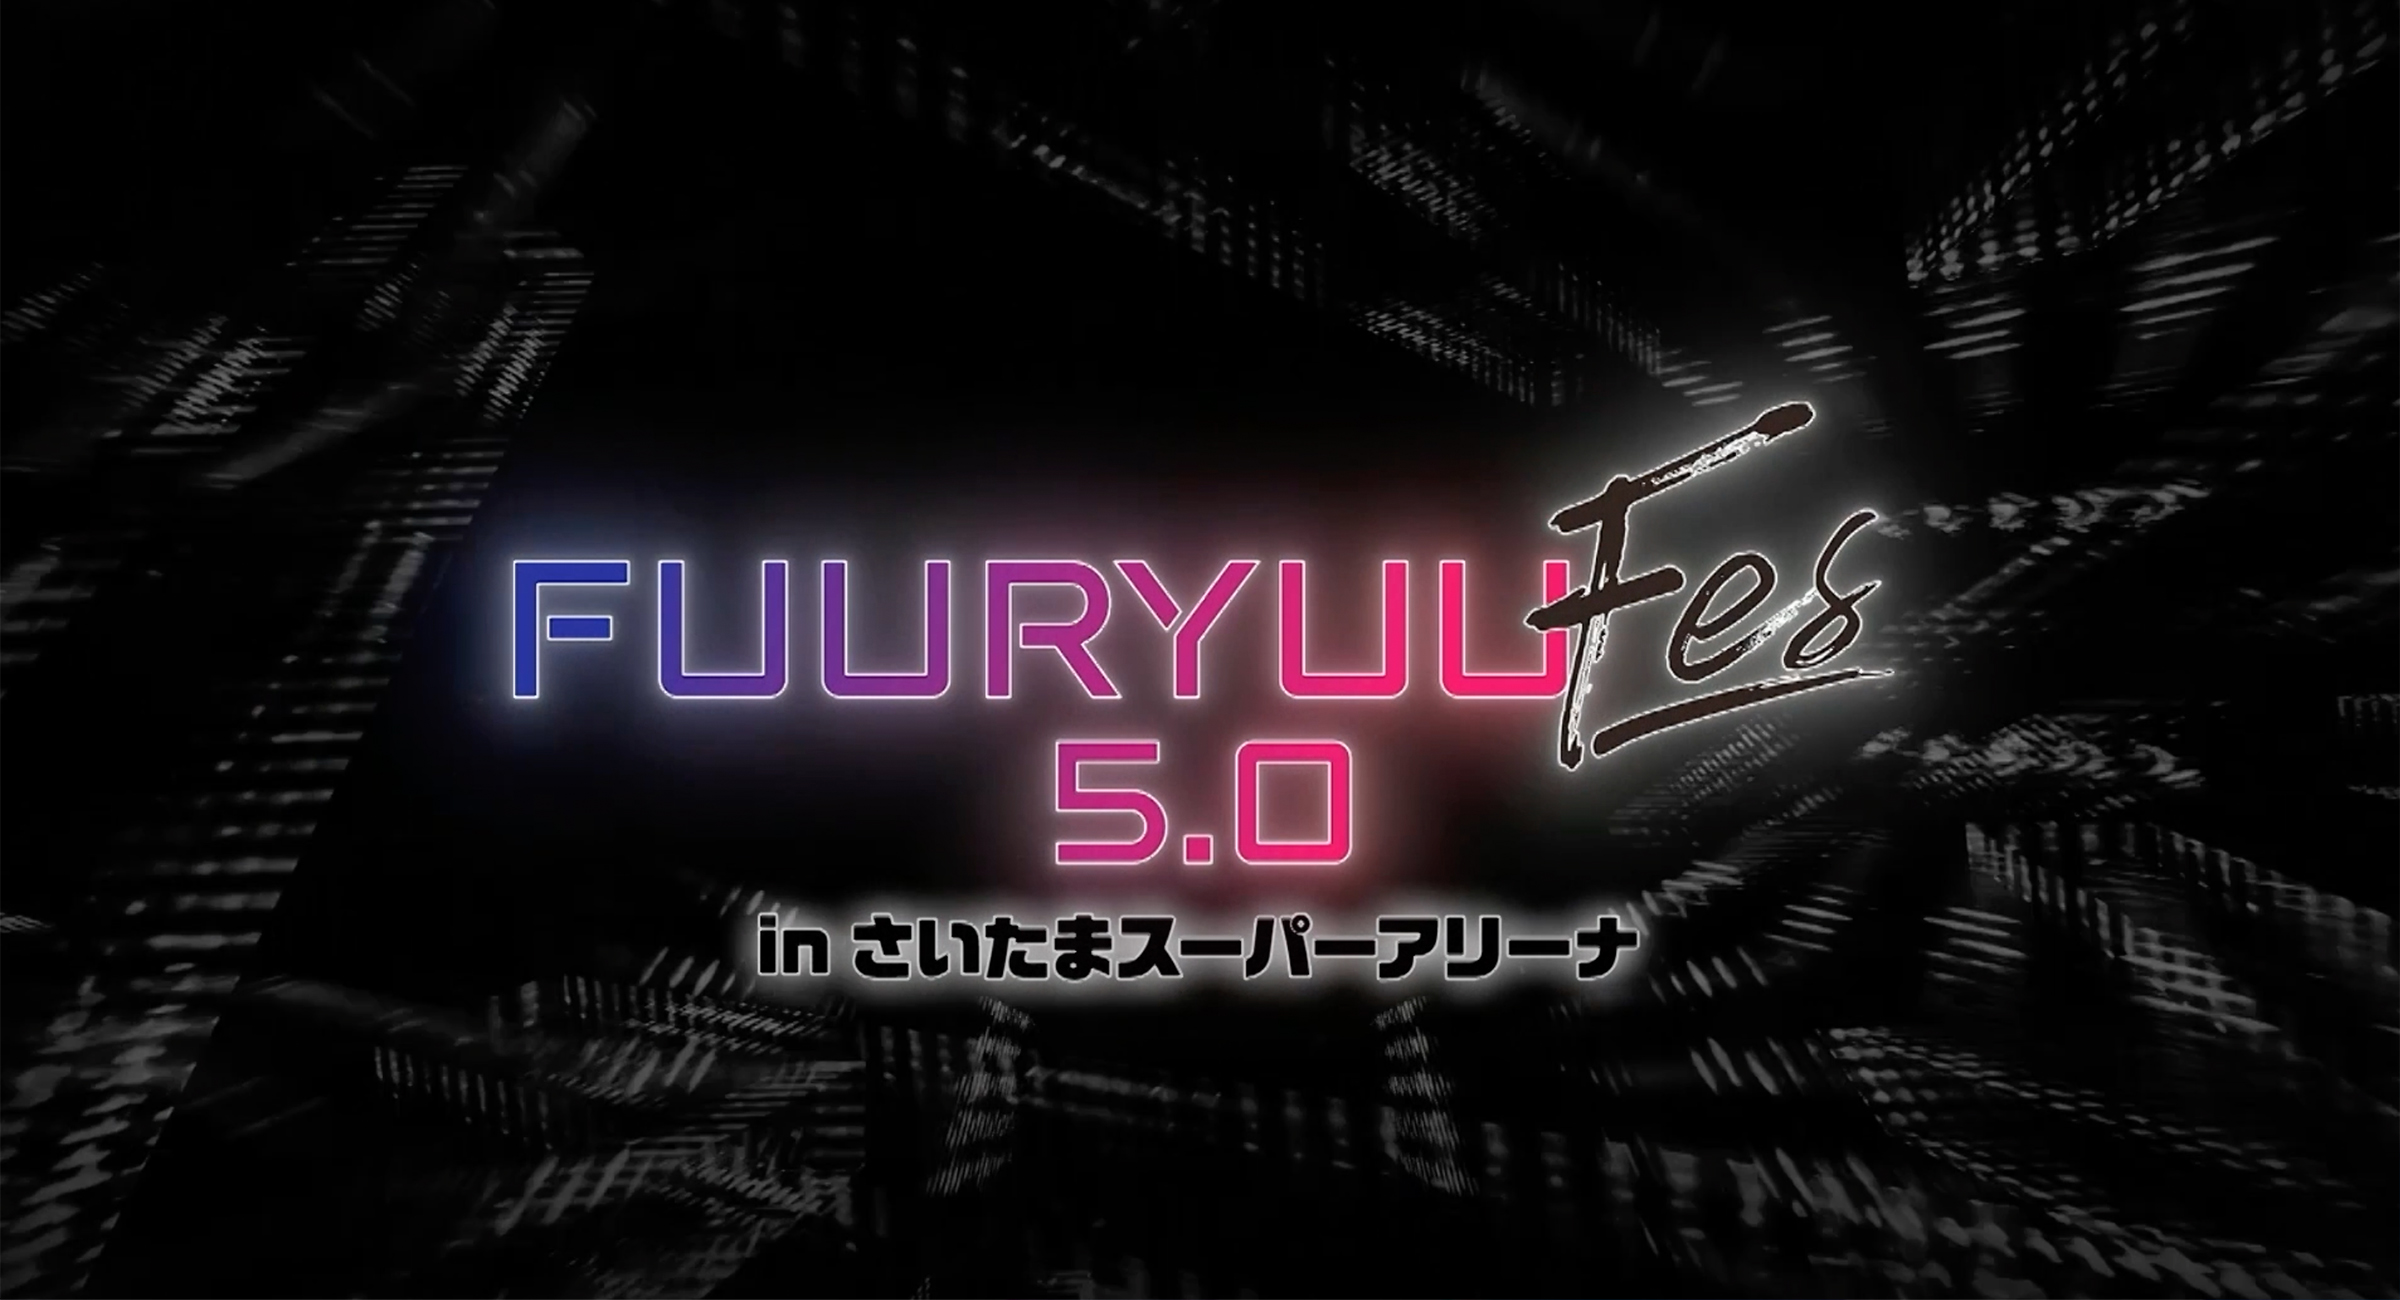 1月1日BS日テレにて『FUURYUUFES 5.0 supported by ガルボム』特別番組放送決定!!